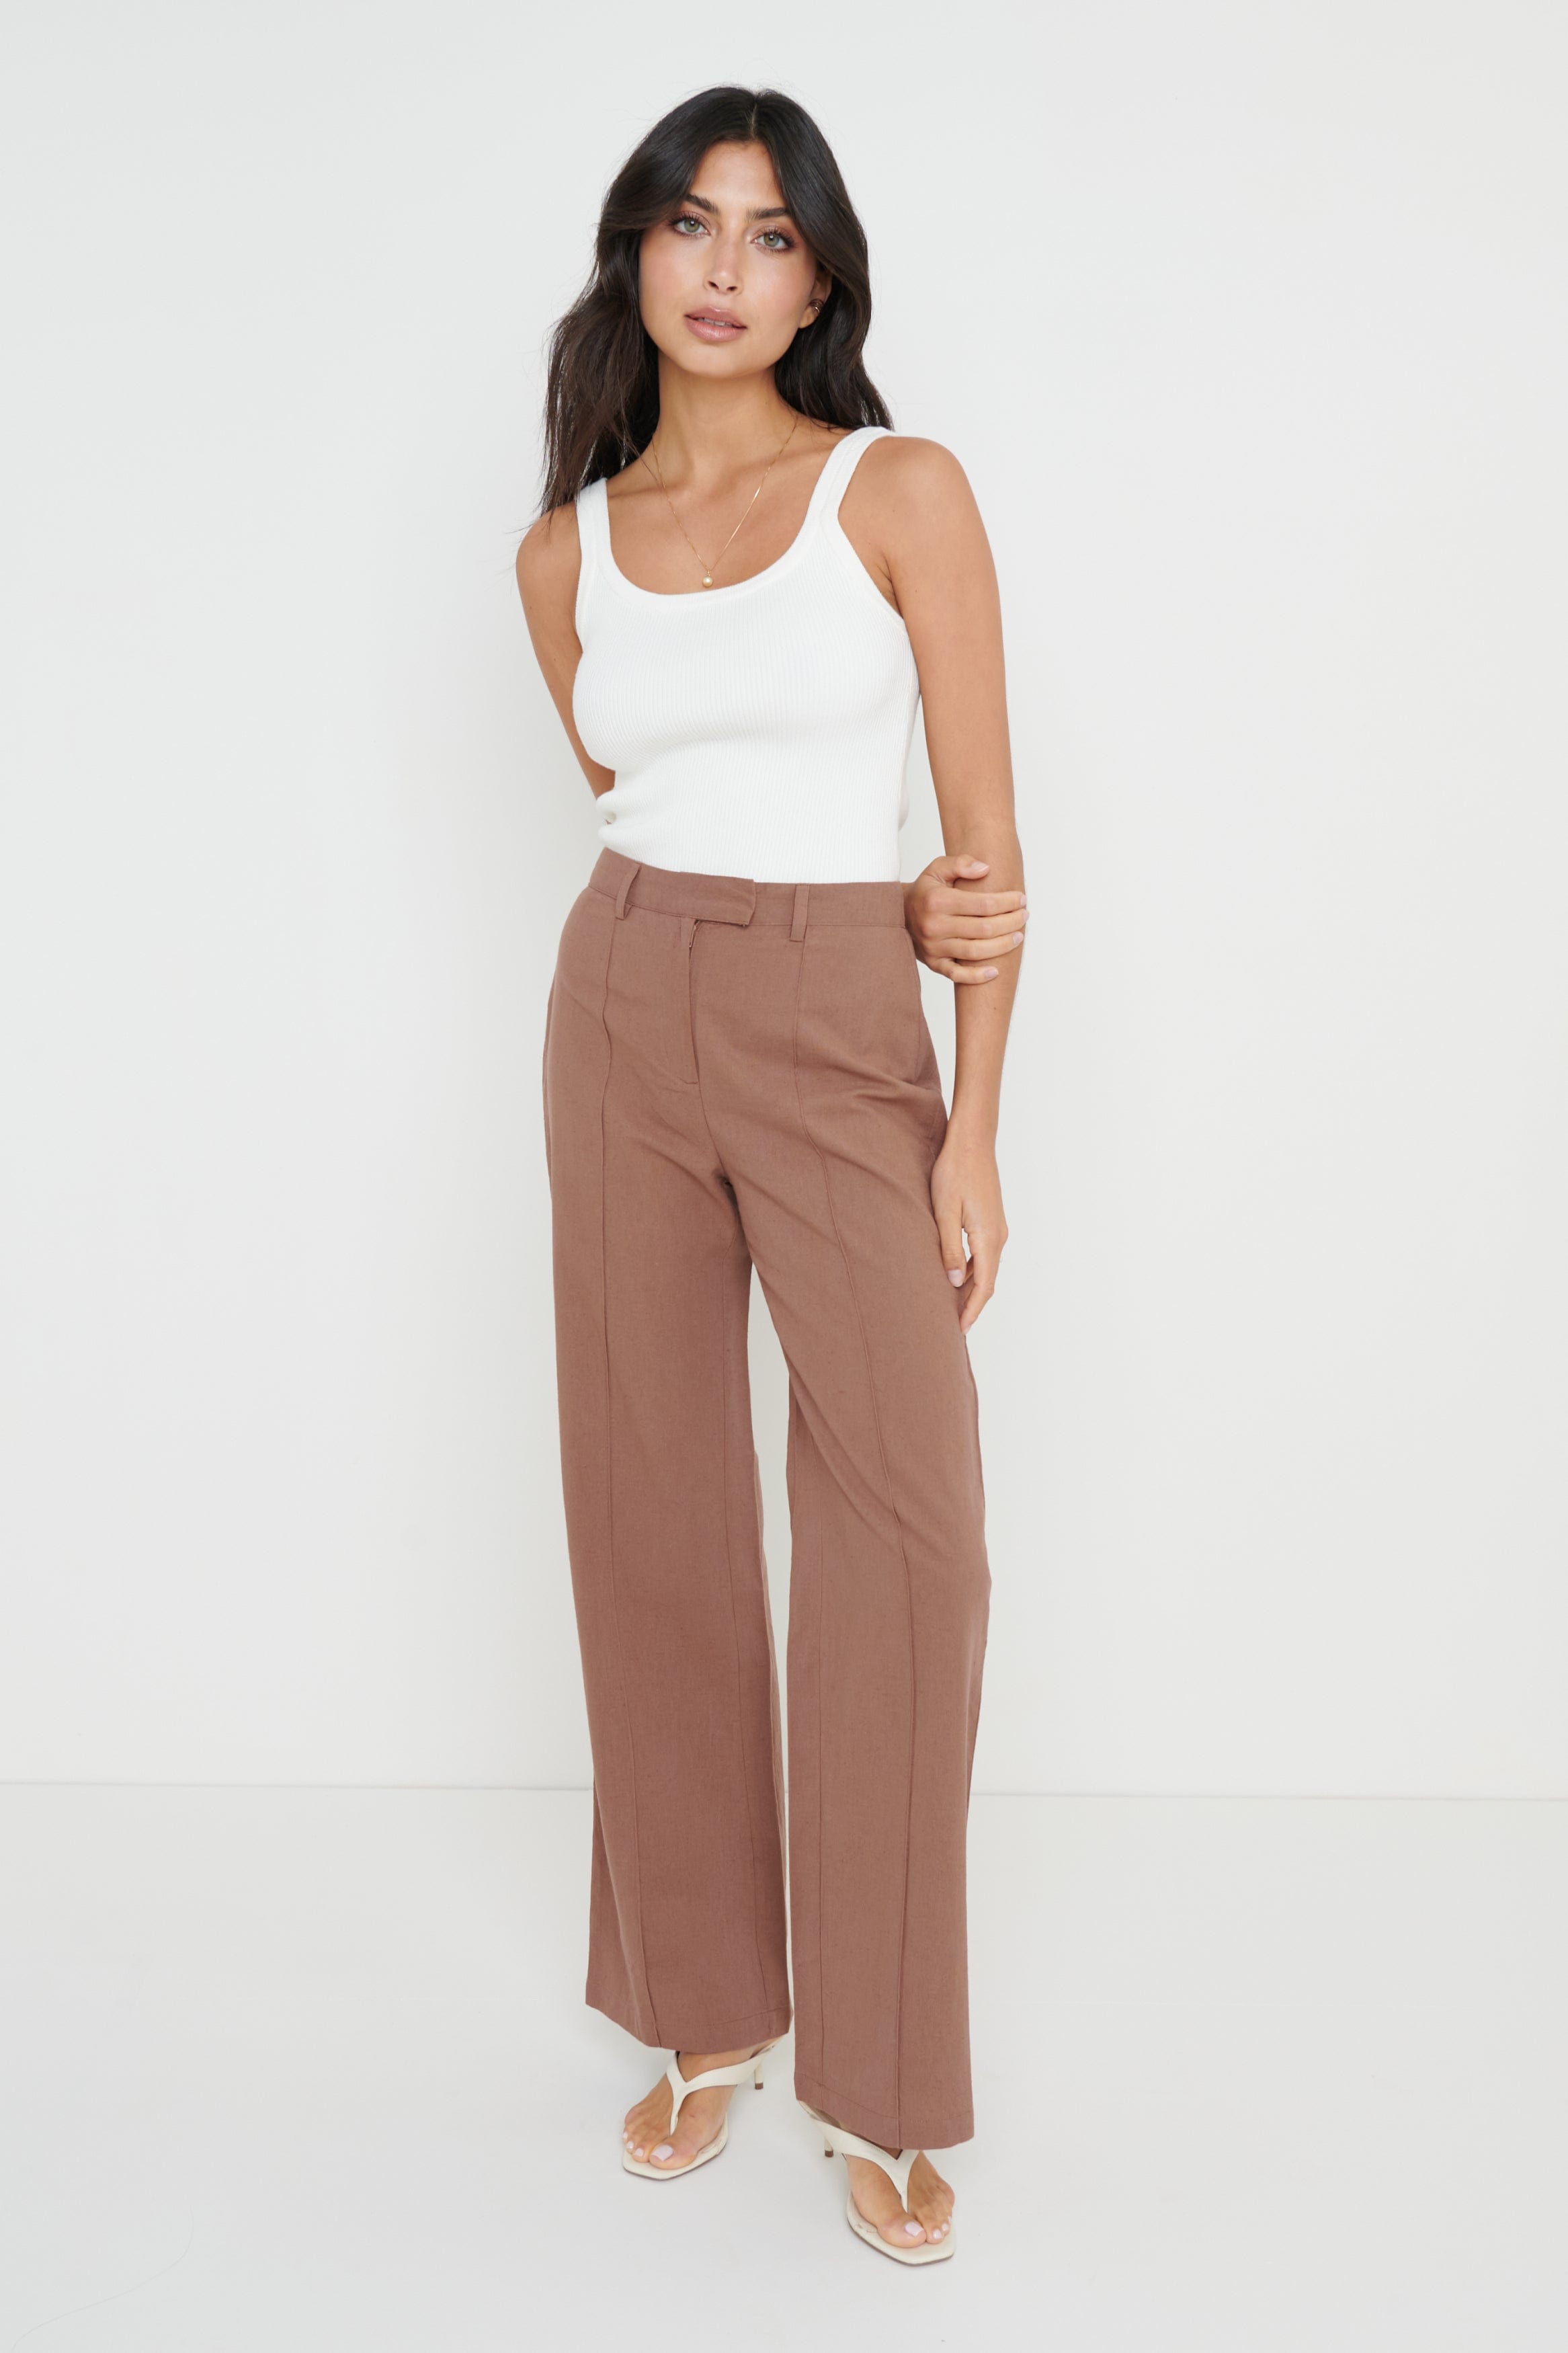 Marlowe Linen Trousers - Brown, 8